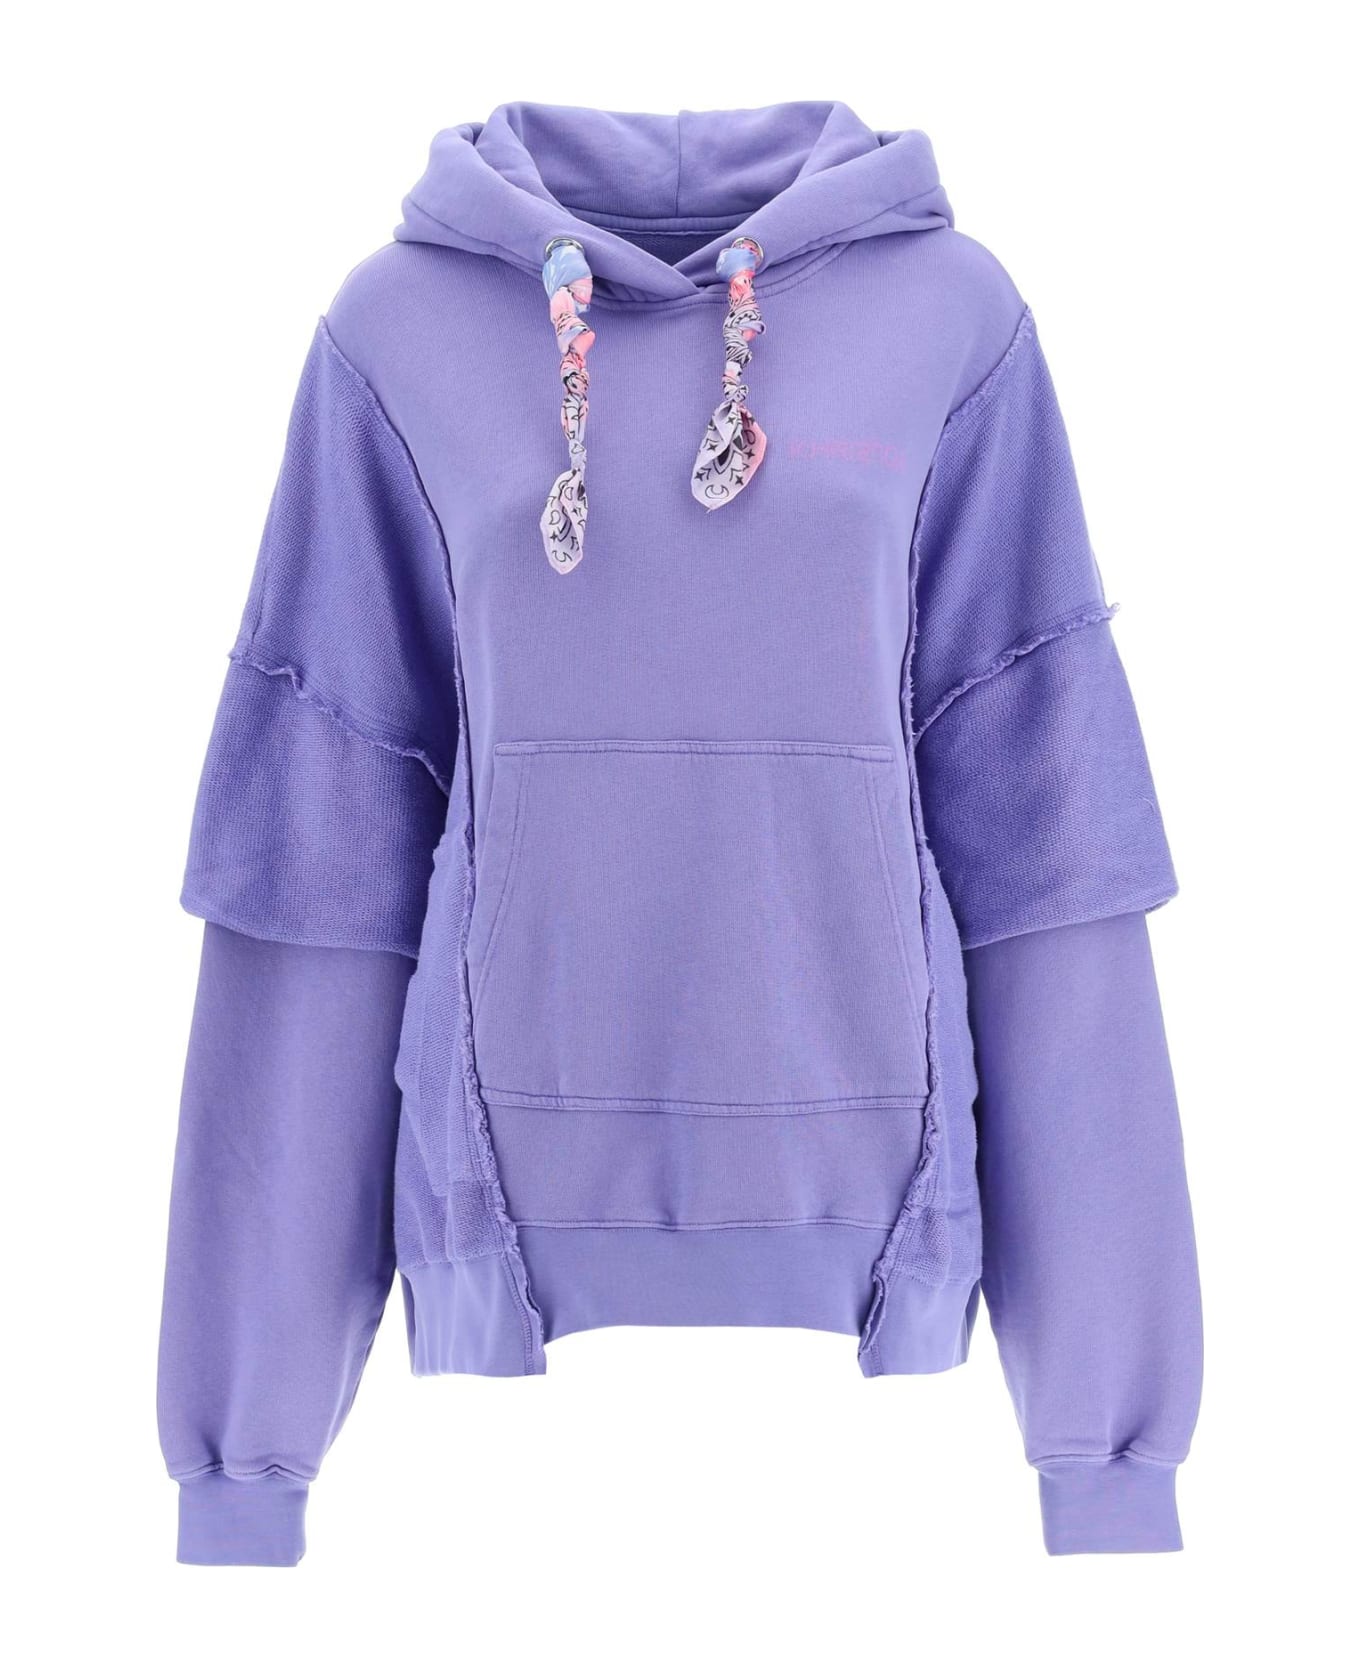 Khrisjoy Oversized Hooded Sweatshirt - WISTERIA (Purple) フリース